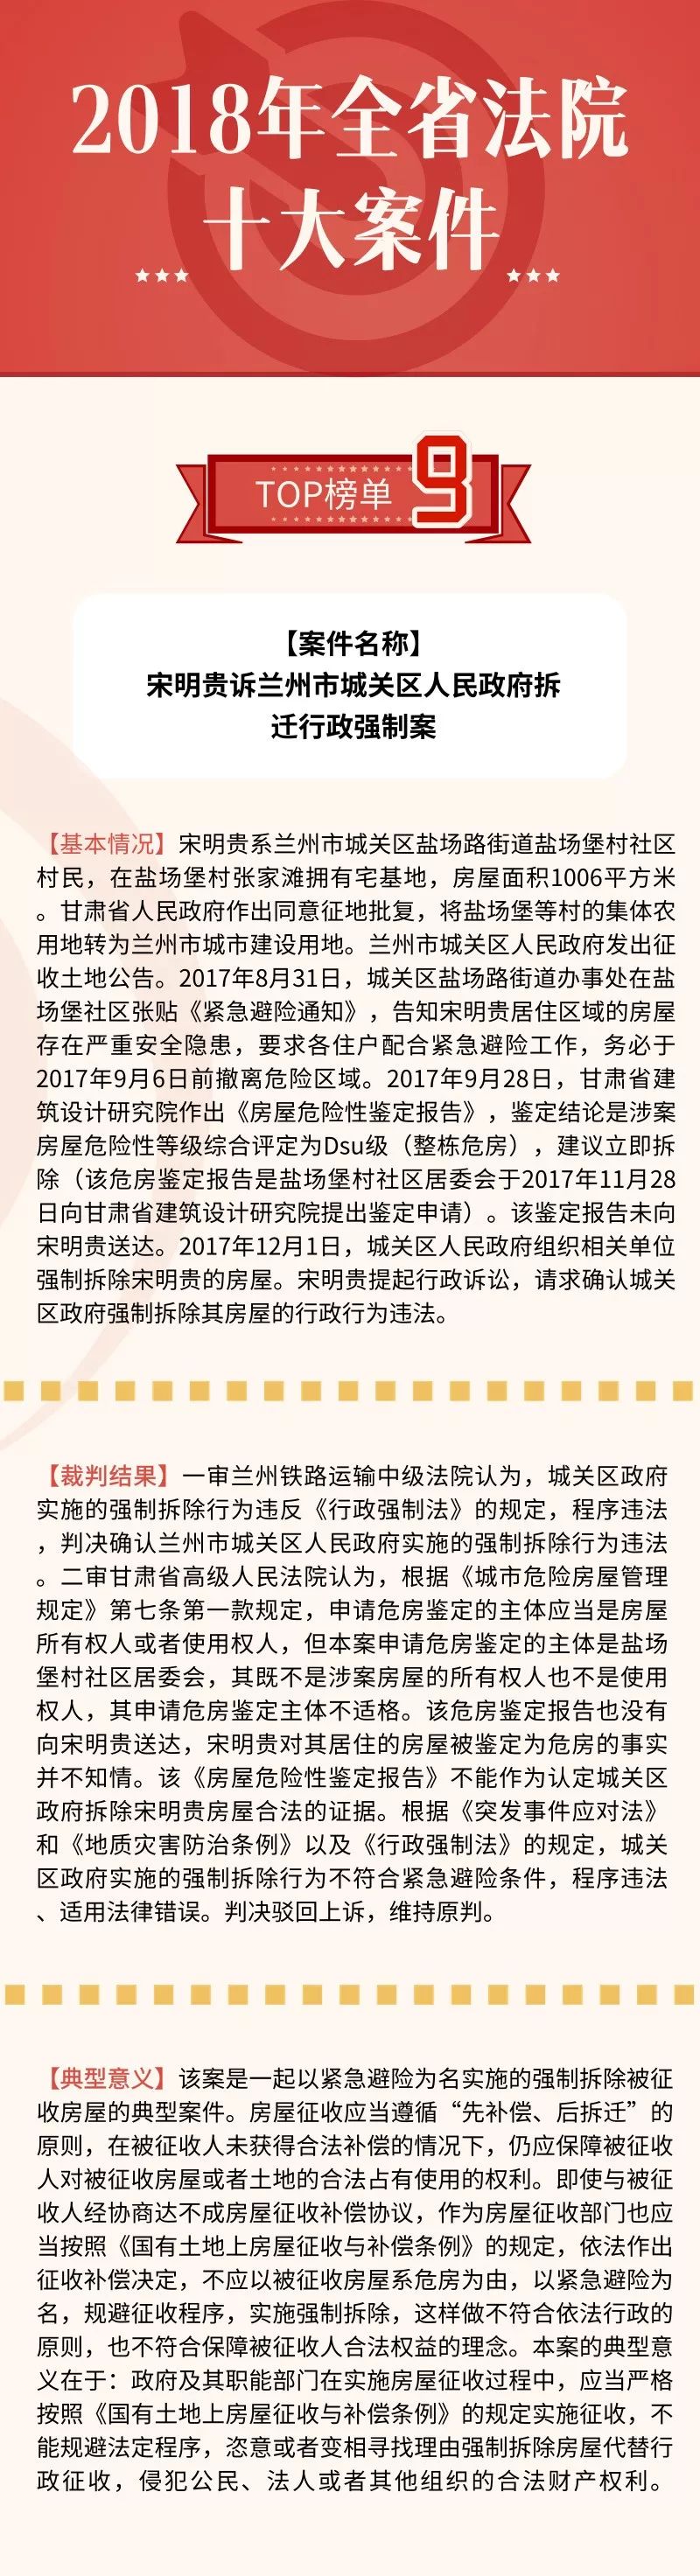 甘肃高院发布2018年全省法院十大案件